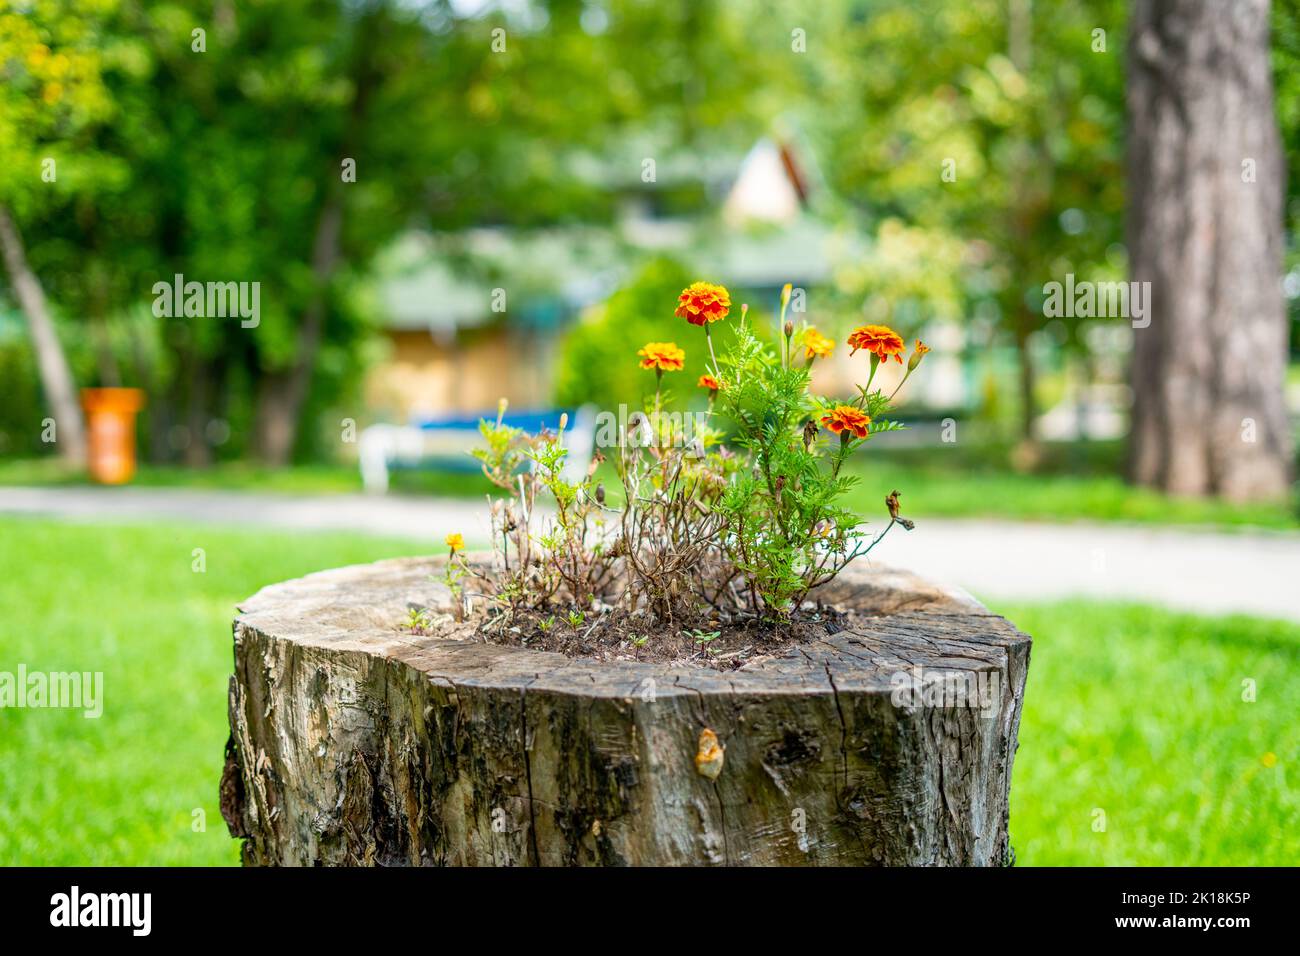 Ringelblumen in einem Loch auf einem Baumstumpf gepflanzt - ein Leben endet ein anderes beginnt Stockfoto